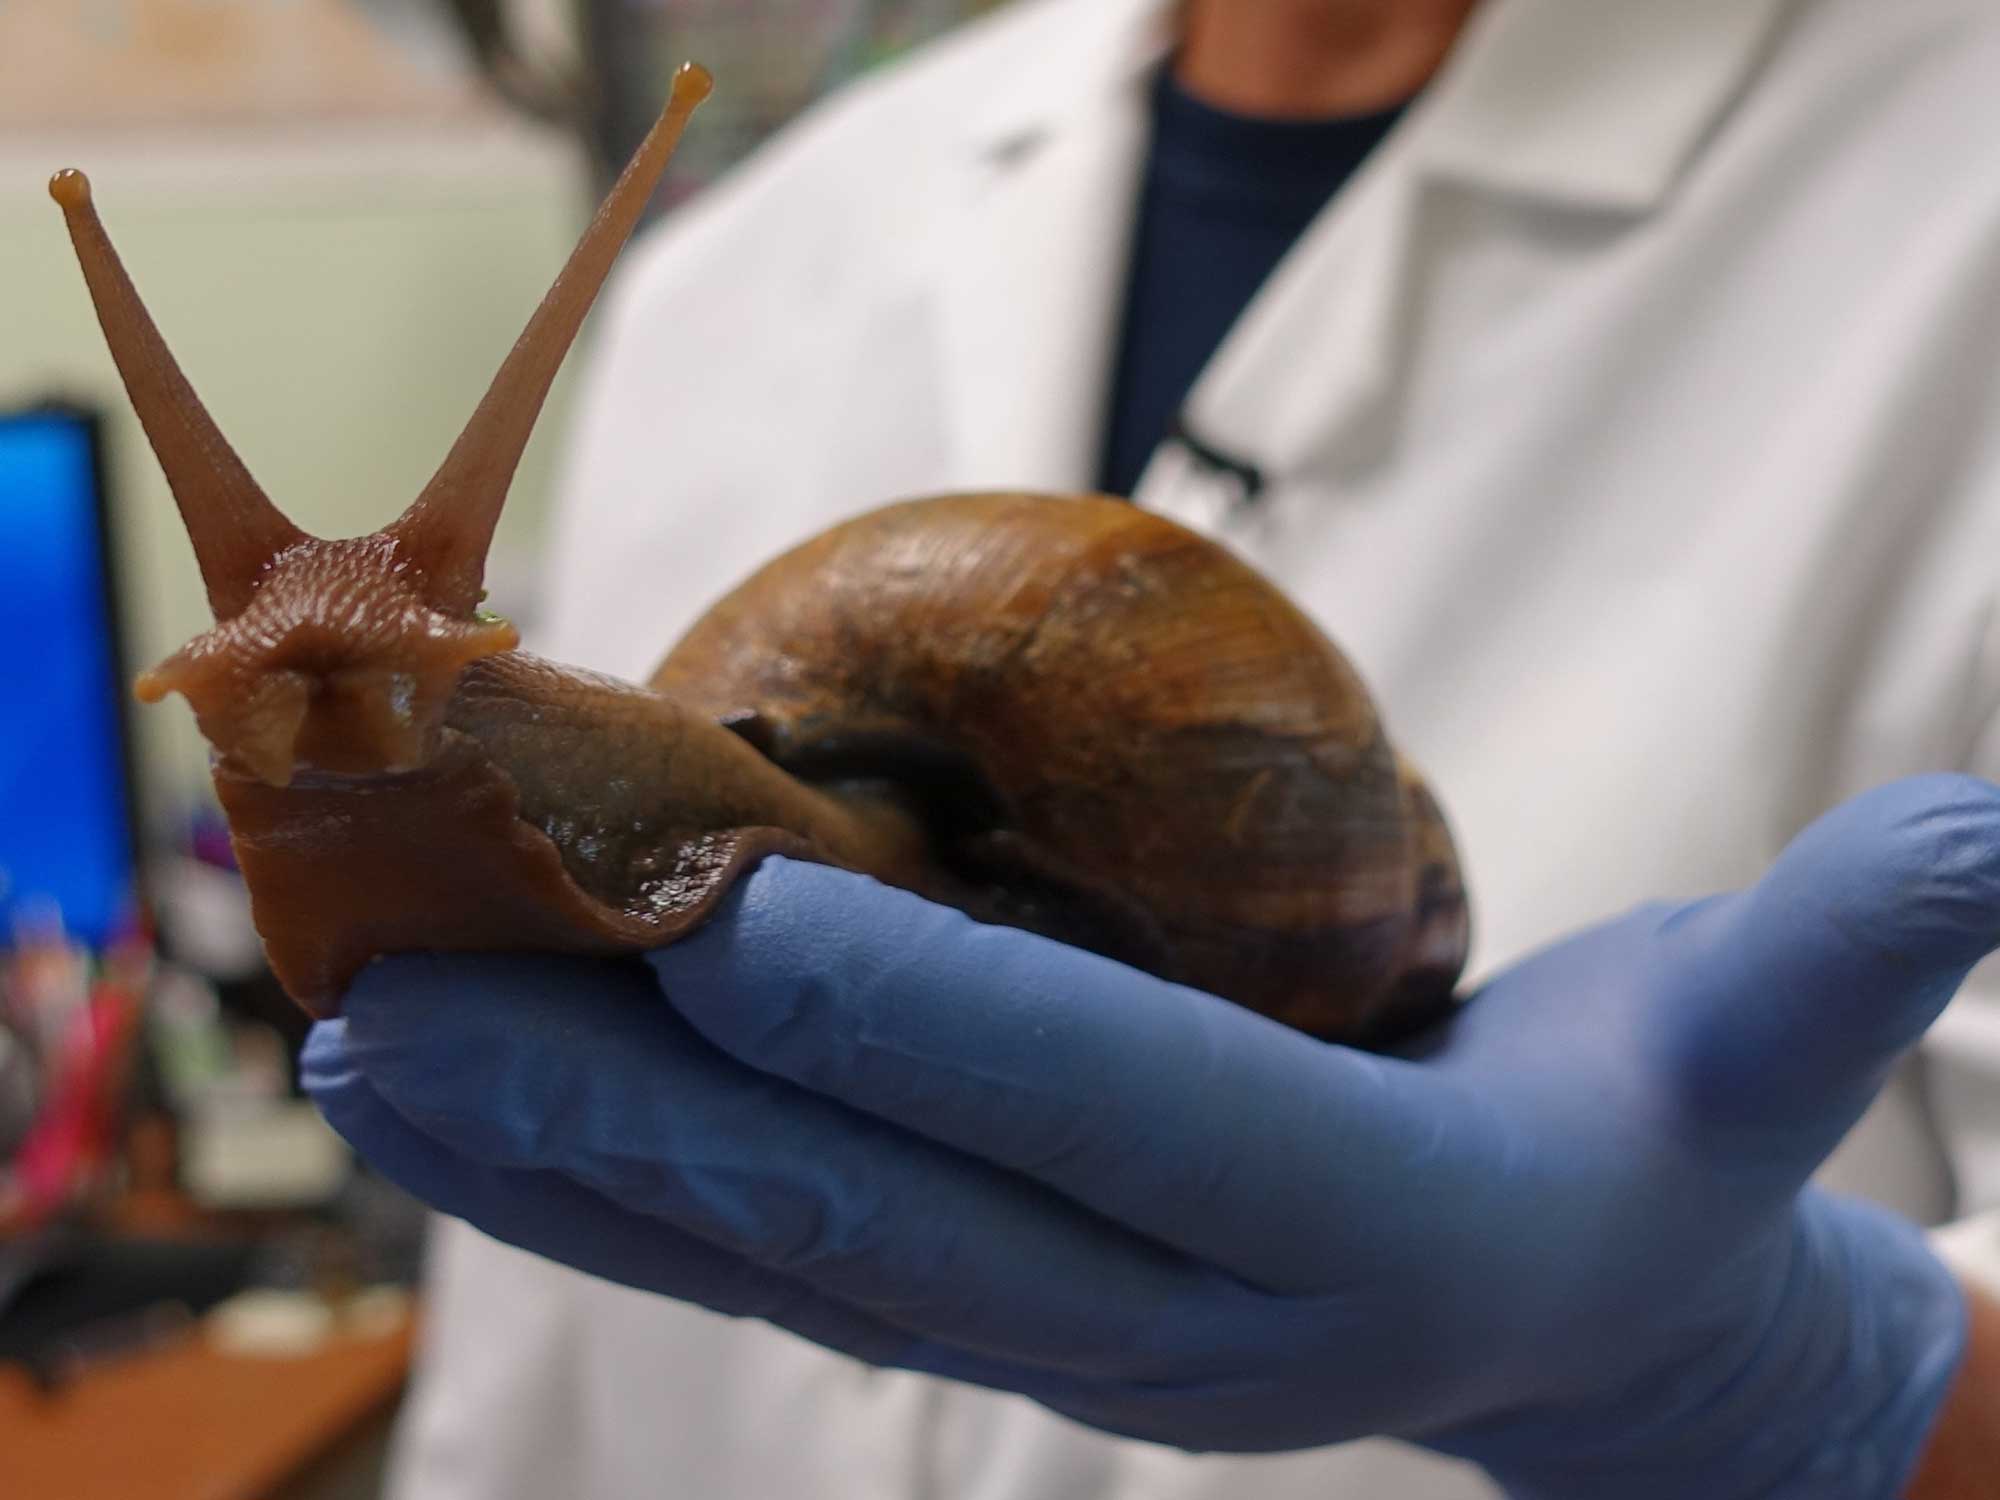 Large, destructive snails have invaded Florida